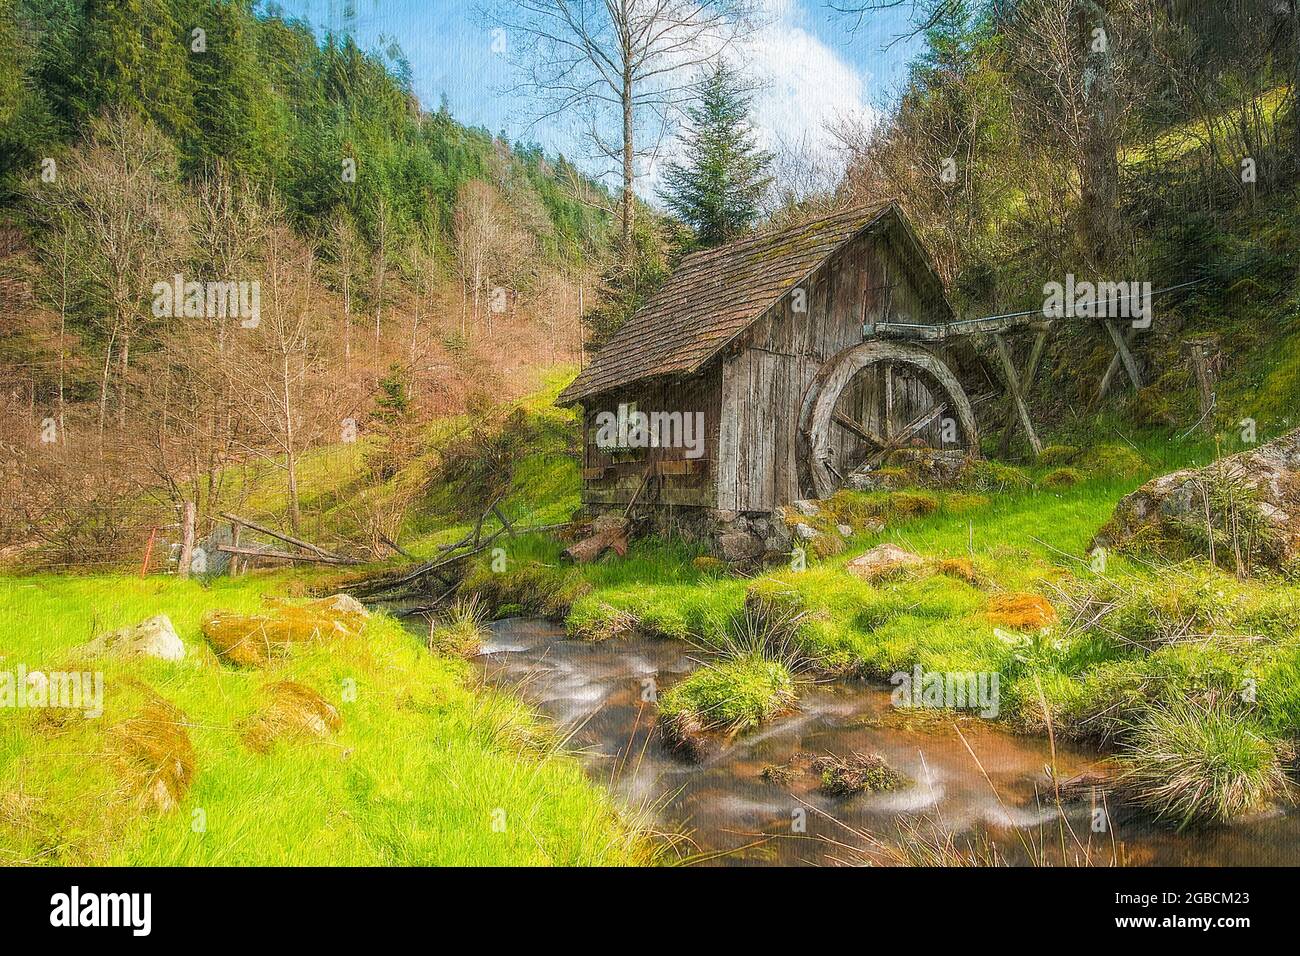 Eine alte Wassermühle neben einem Bach im Schwarzwald Deutschland, die ein bemaltes und strukturiertes Aussehen gegeben hat. Stockfoto